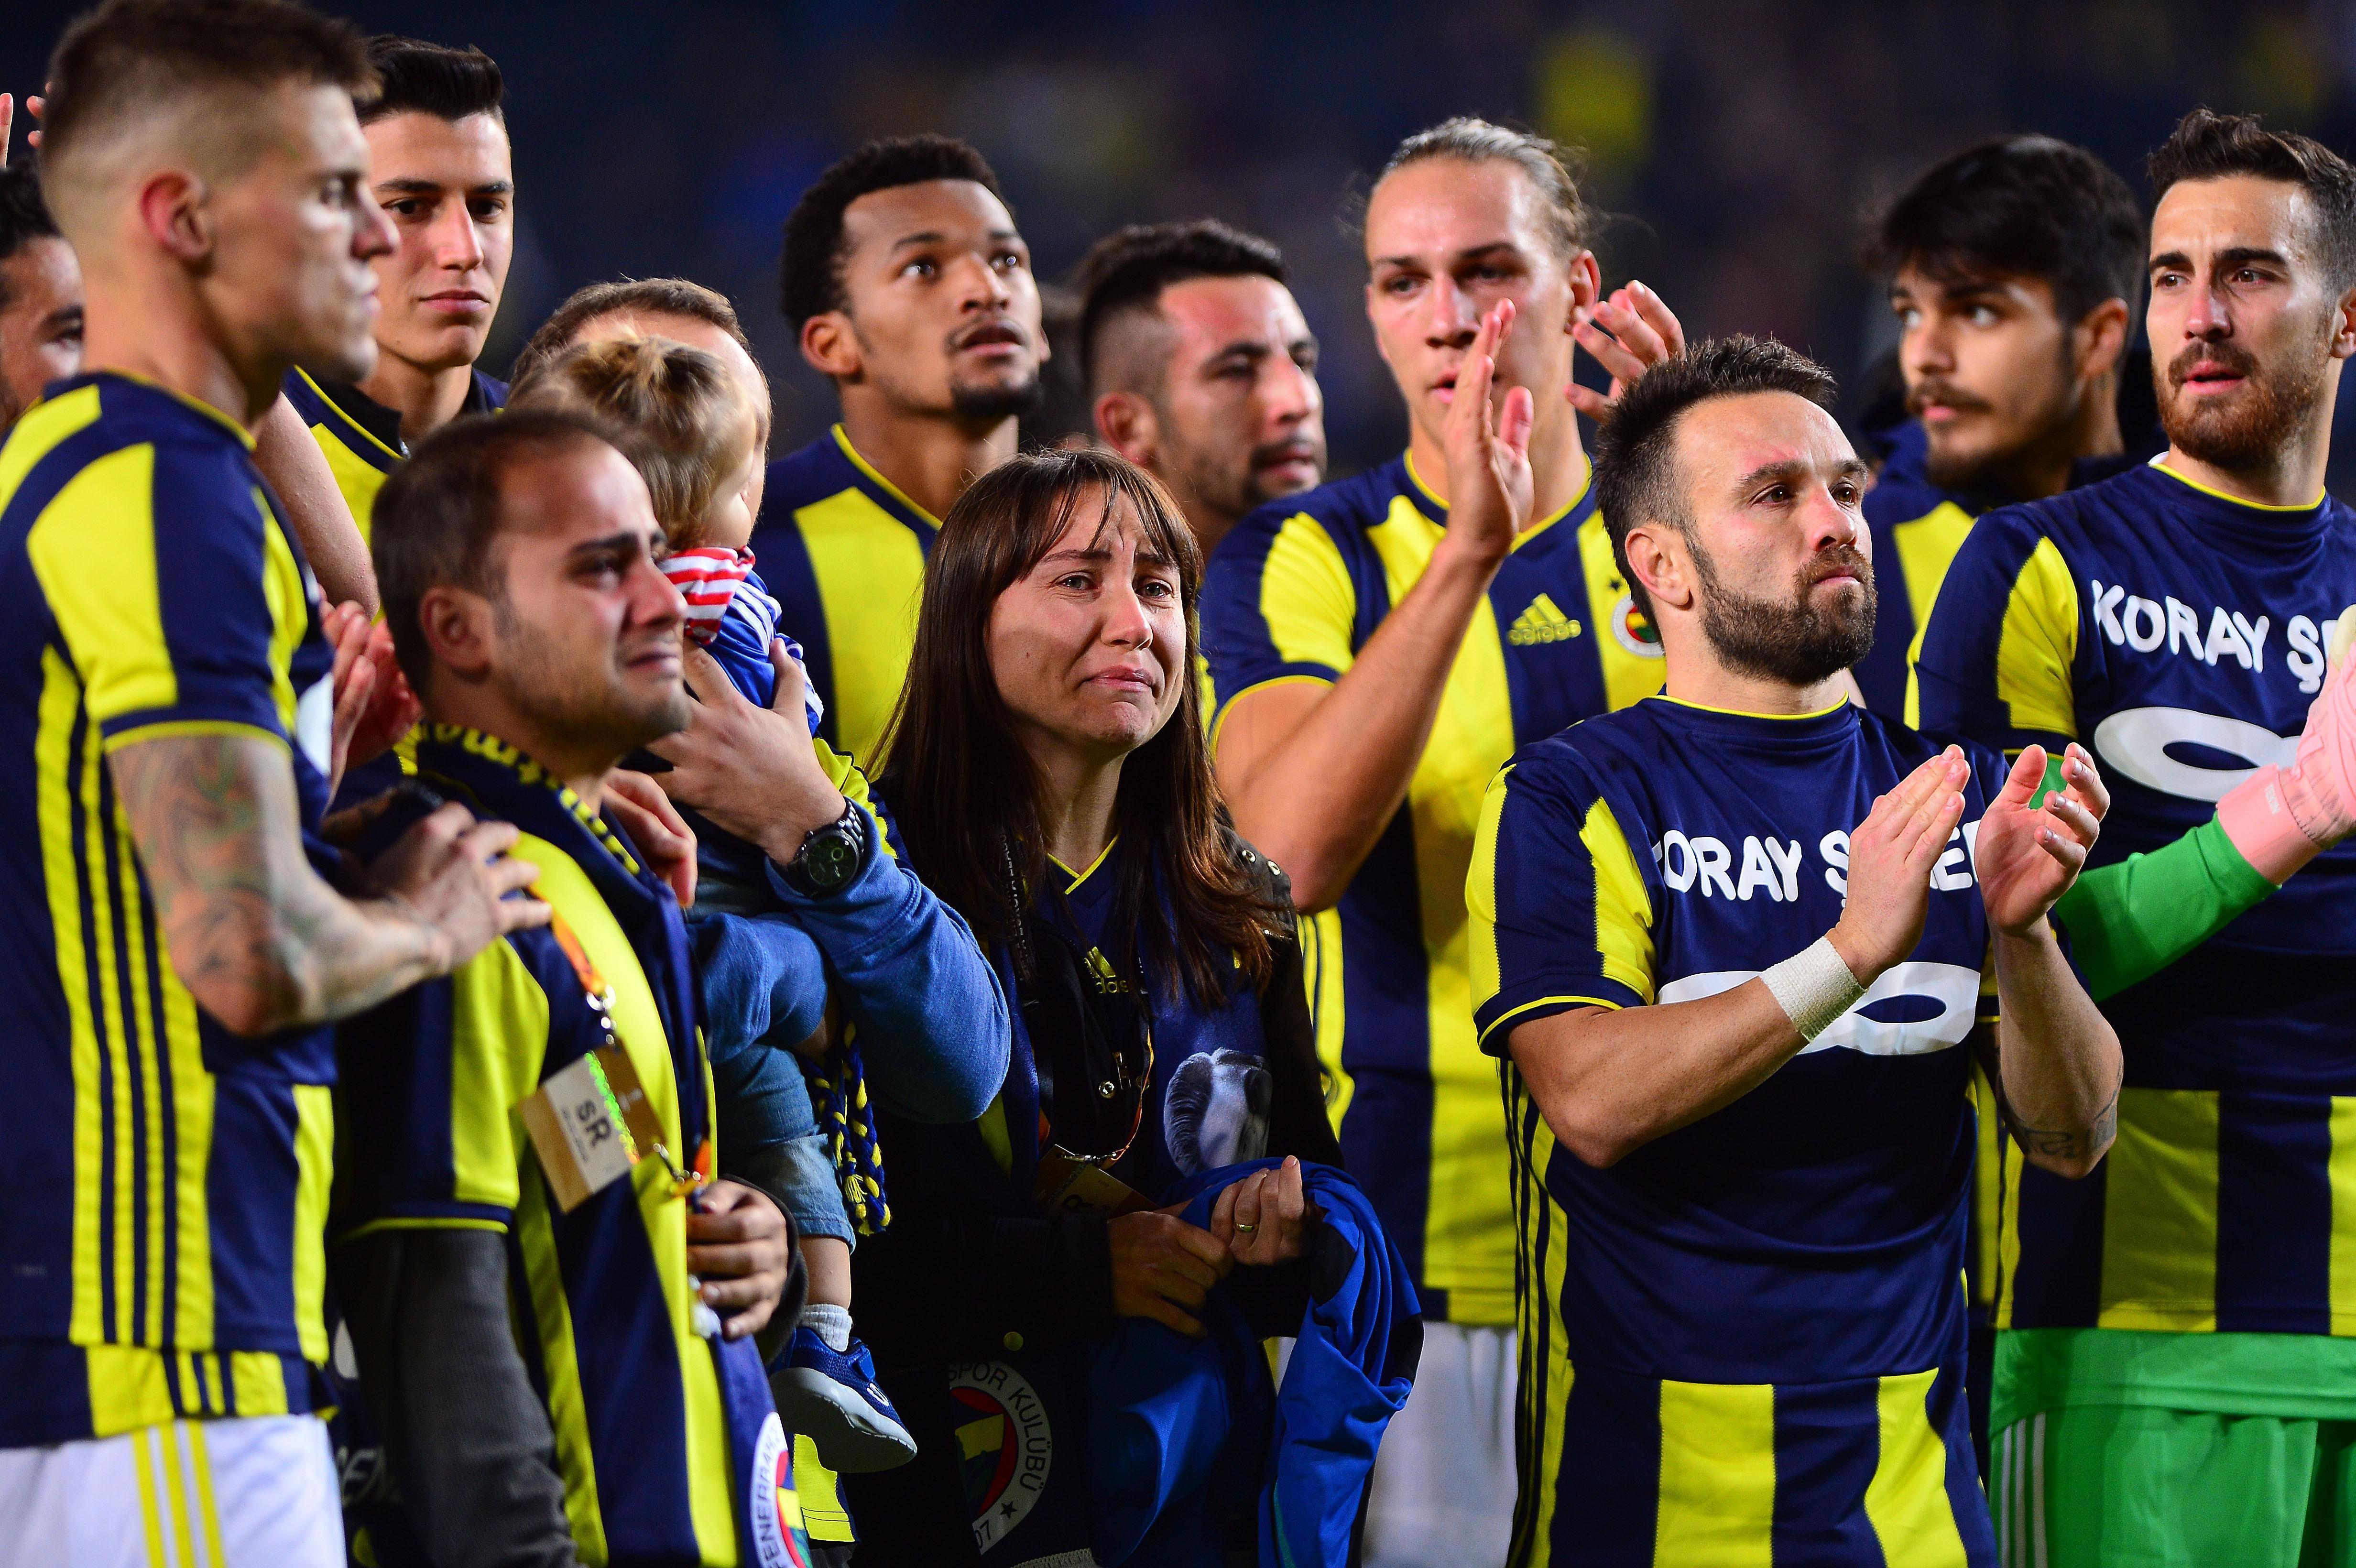 Fenerbahçeli futbolcular Koray Şeneri unutmadı